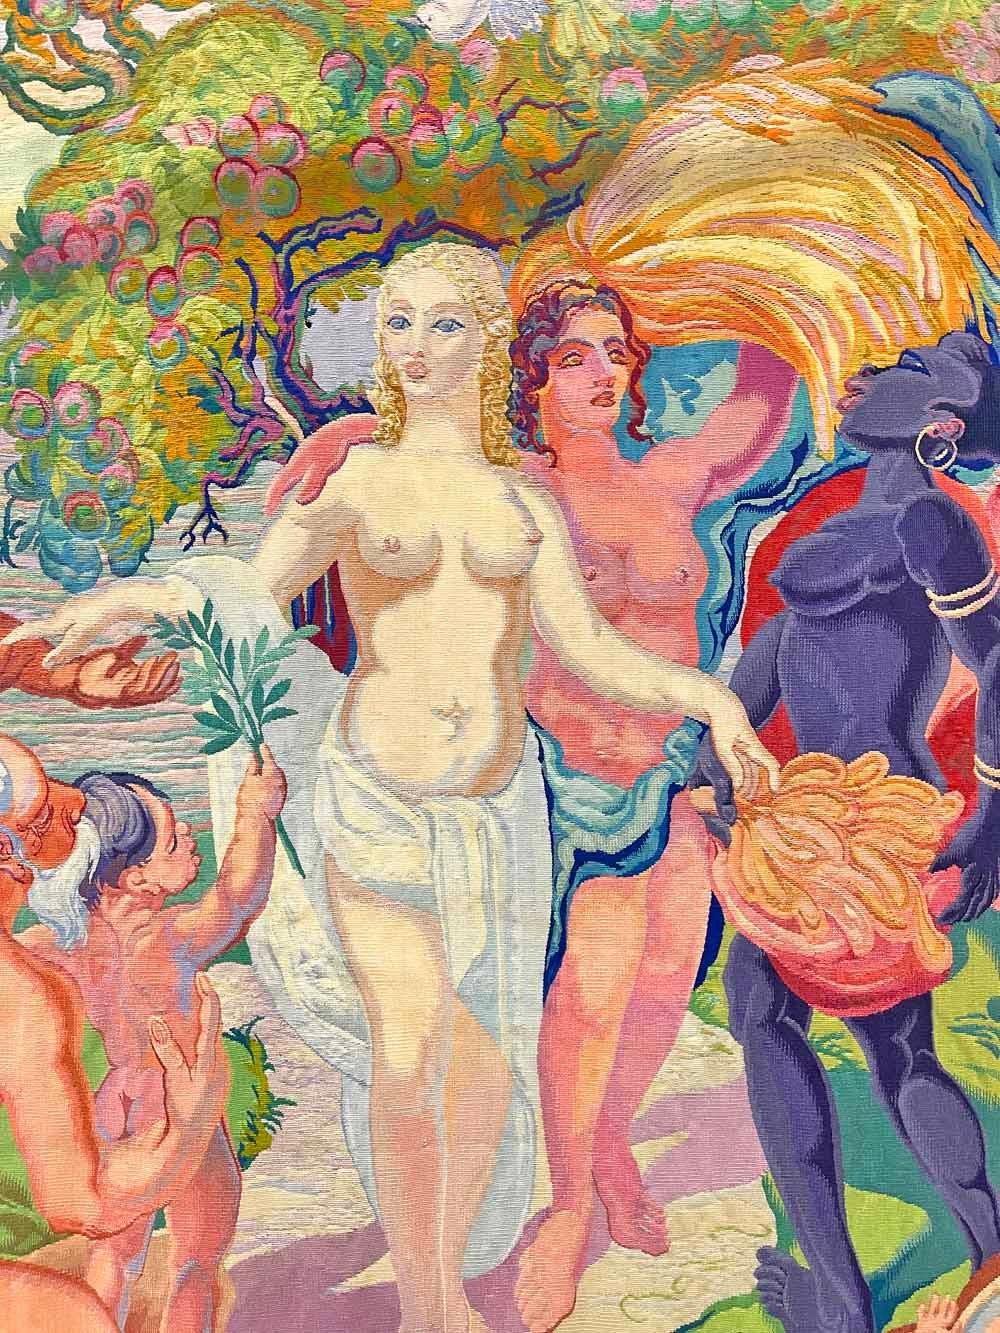 Œuvre d'art unique et remarquable d'une grande importance historique, cette tapisserie Art déco monumentale célébrant la fin de la Seconde Guerre mondiale présente une grande scène de figures masculines et féminines nues dans des couleurs brillantes